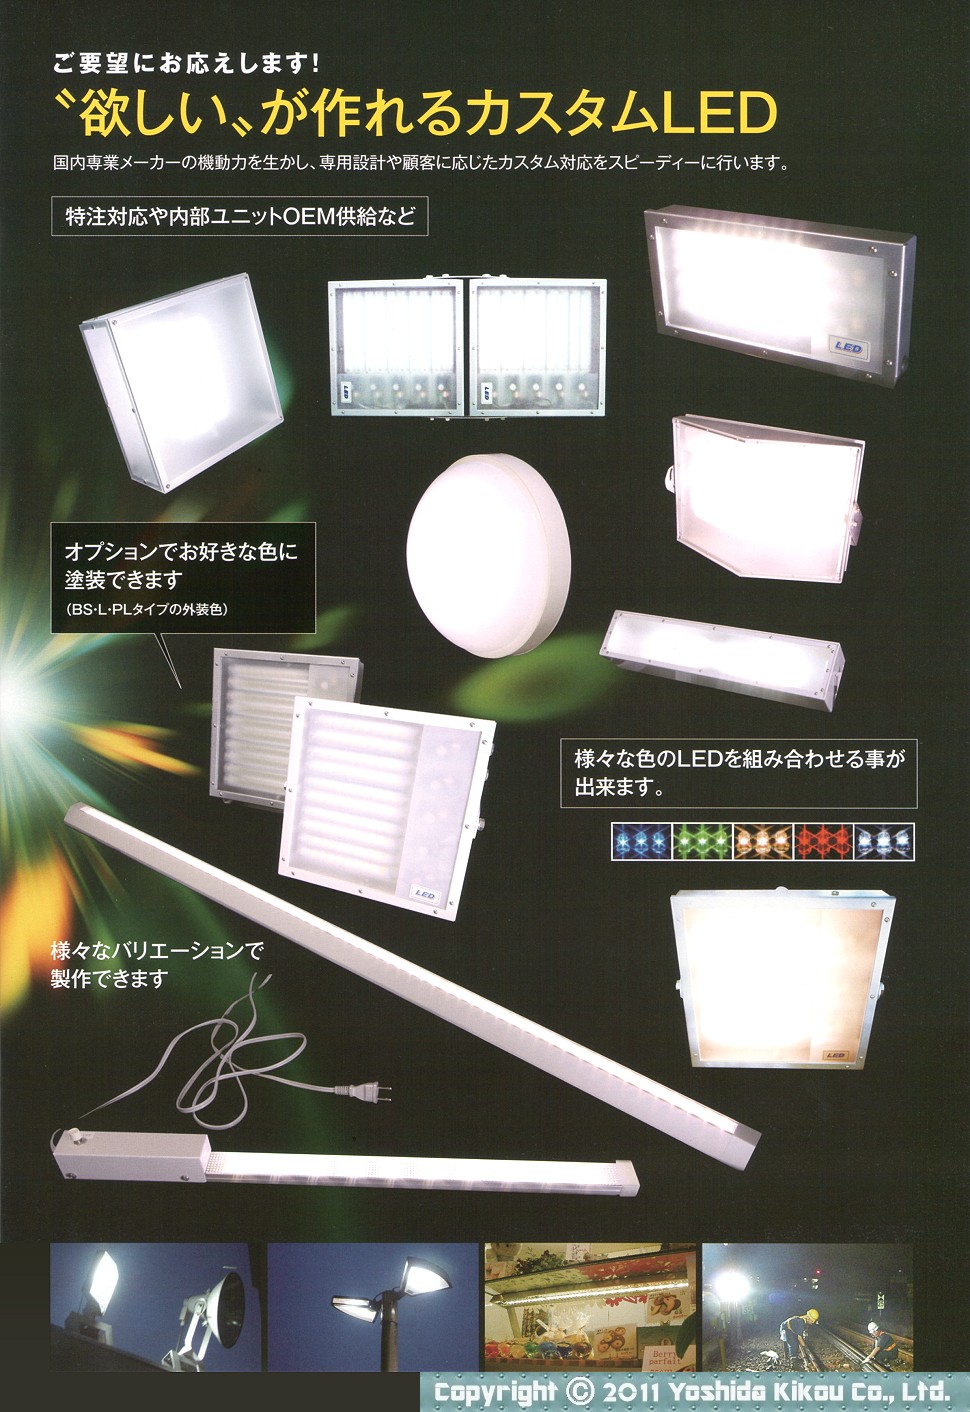 次世代LED照明「SUNDシリーズ」 03